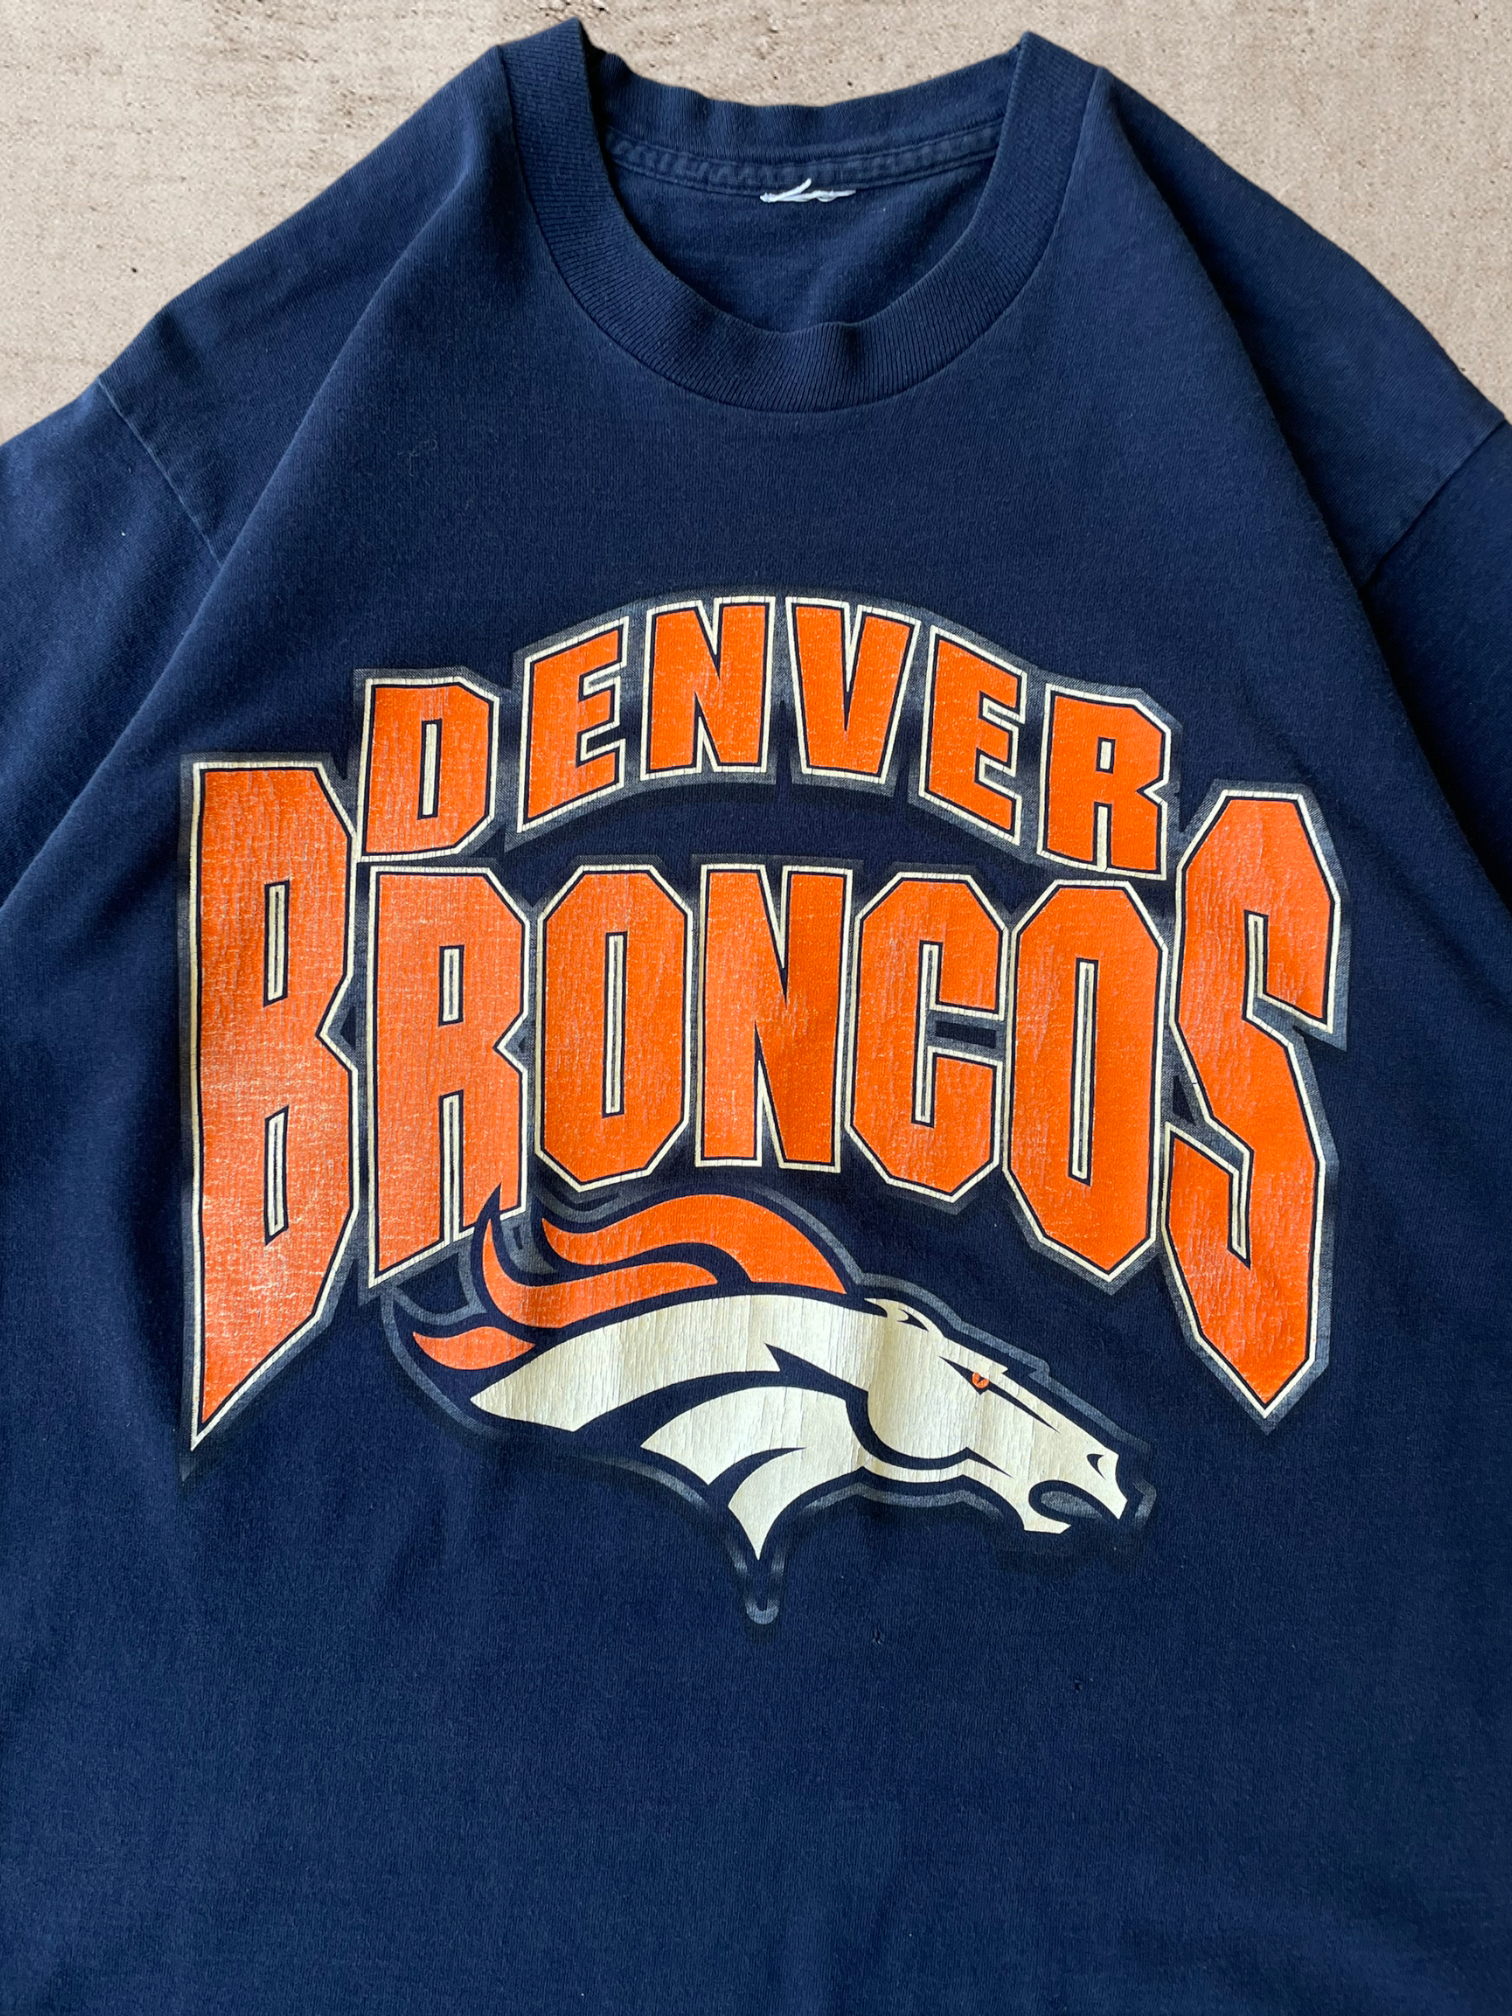 90s Denver Broncos T-Shirt - Large